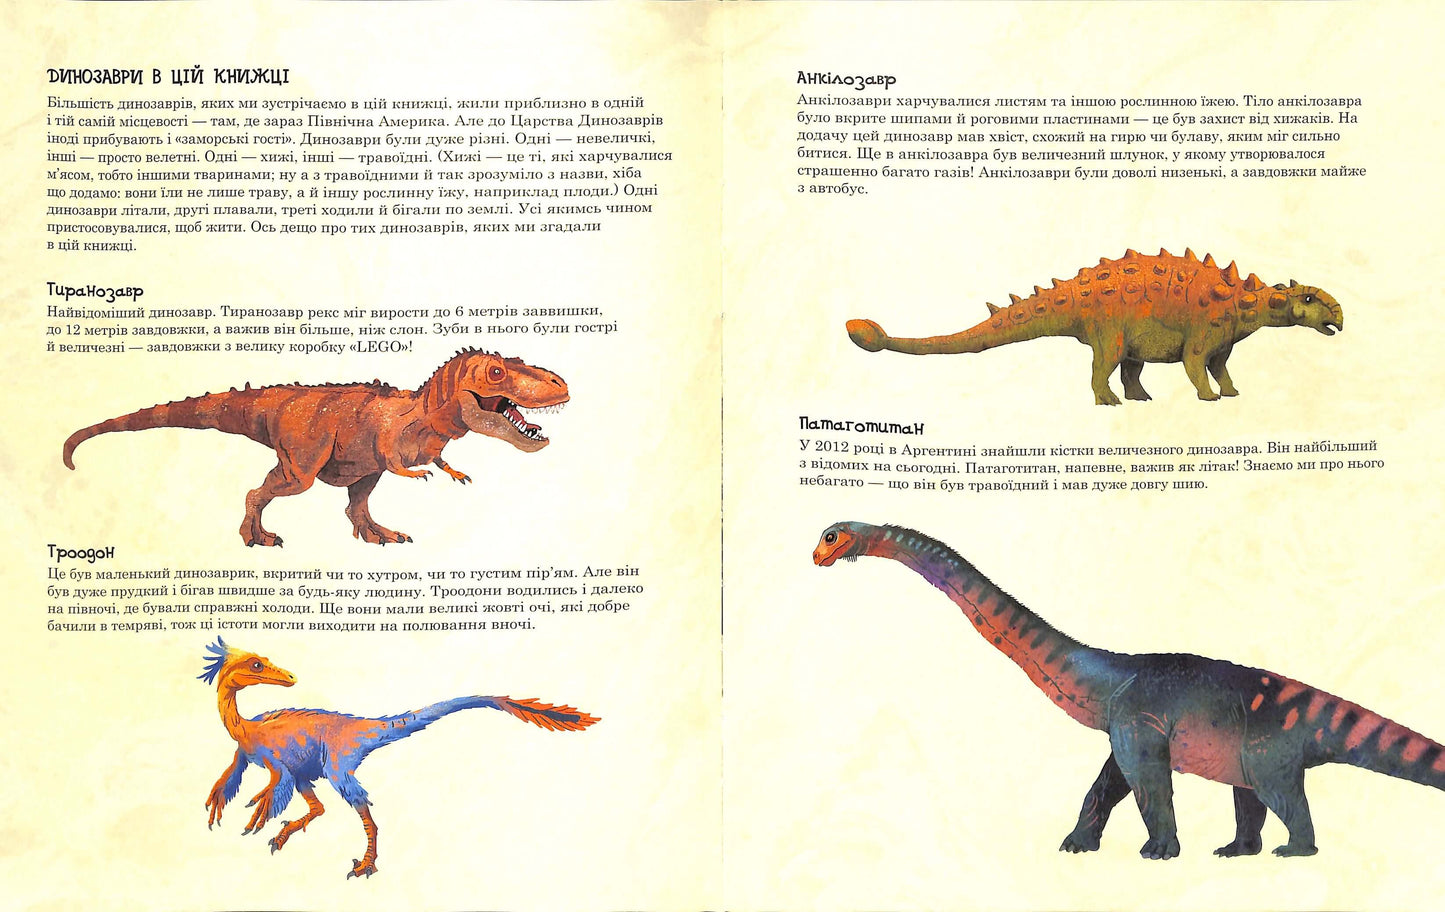 Друзяки-динозаврики. Пошуки скарбів